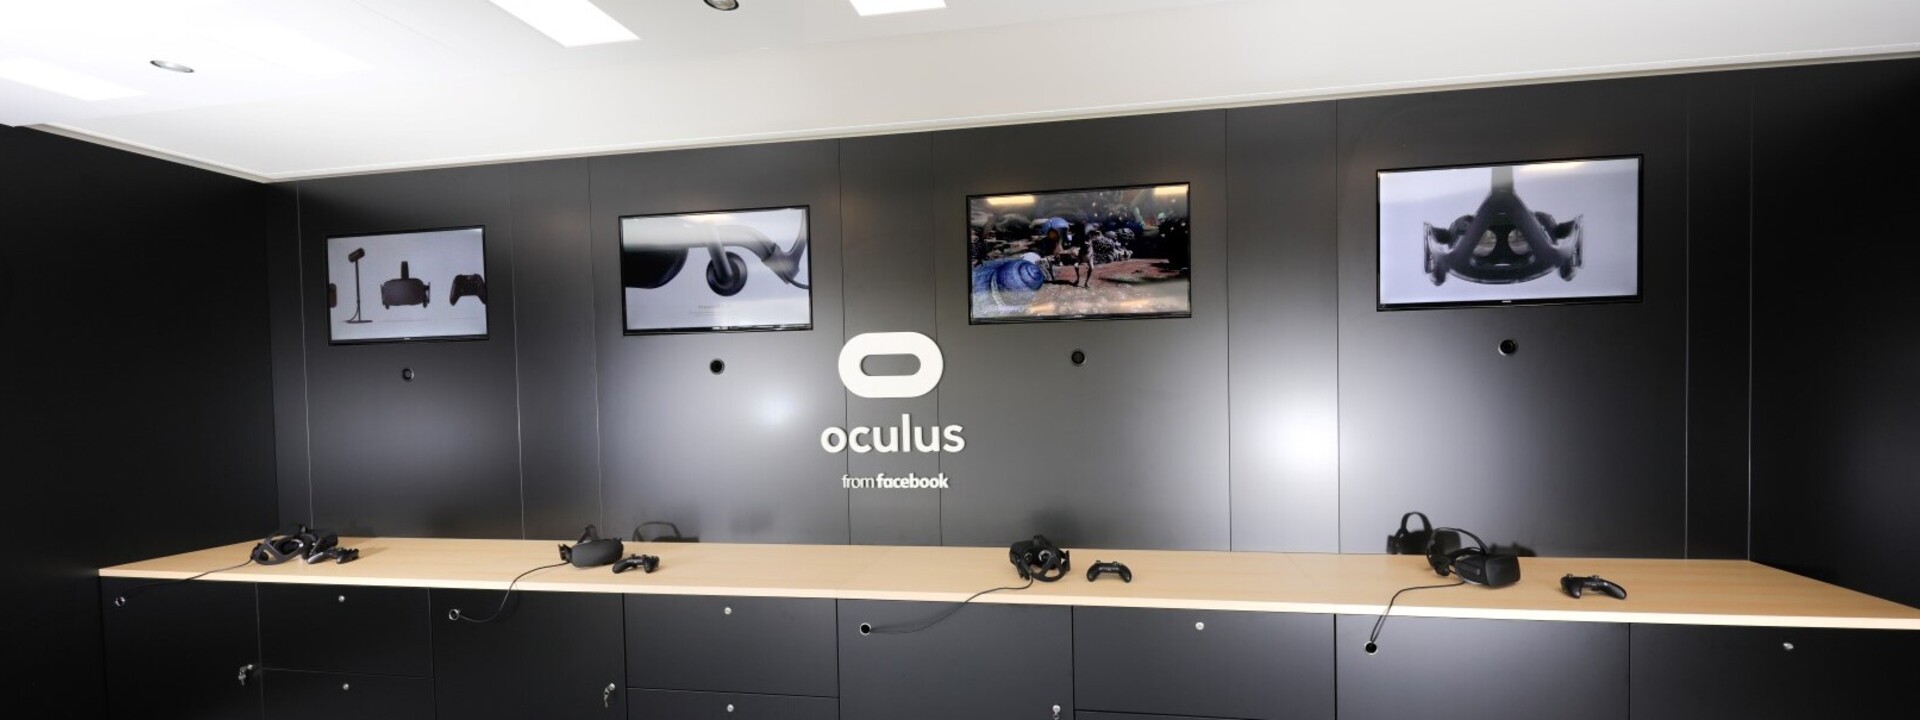 oculus-showtruck-2-interieur-innenausbau.jpg